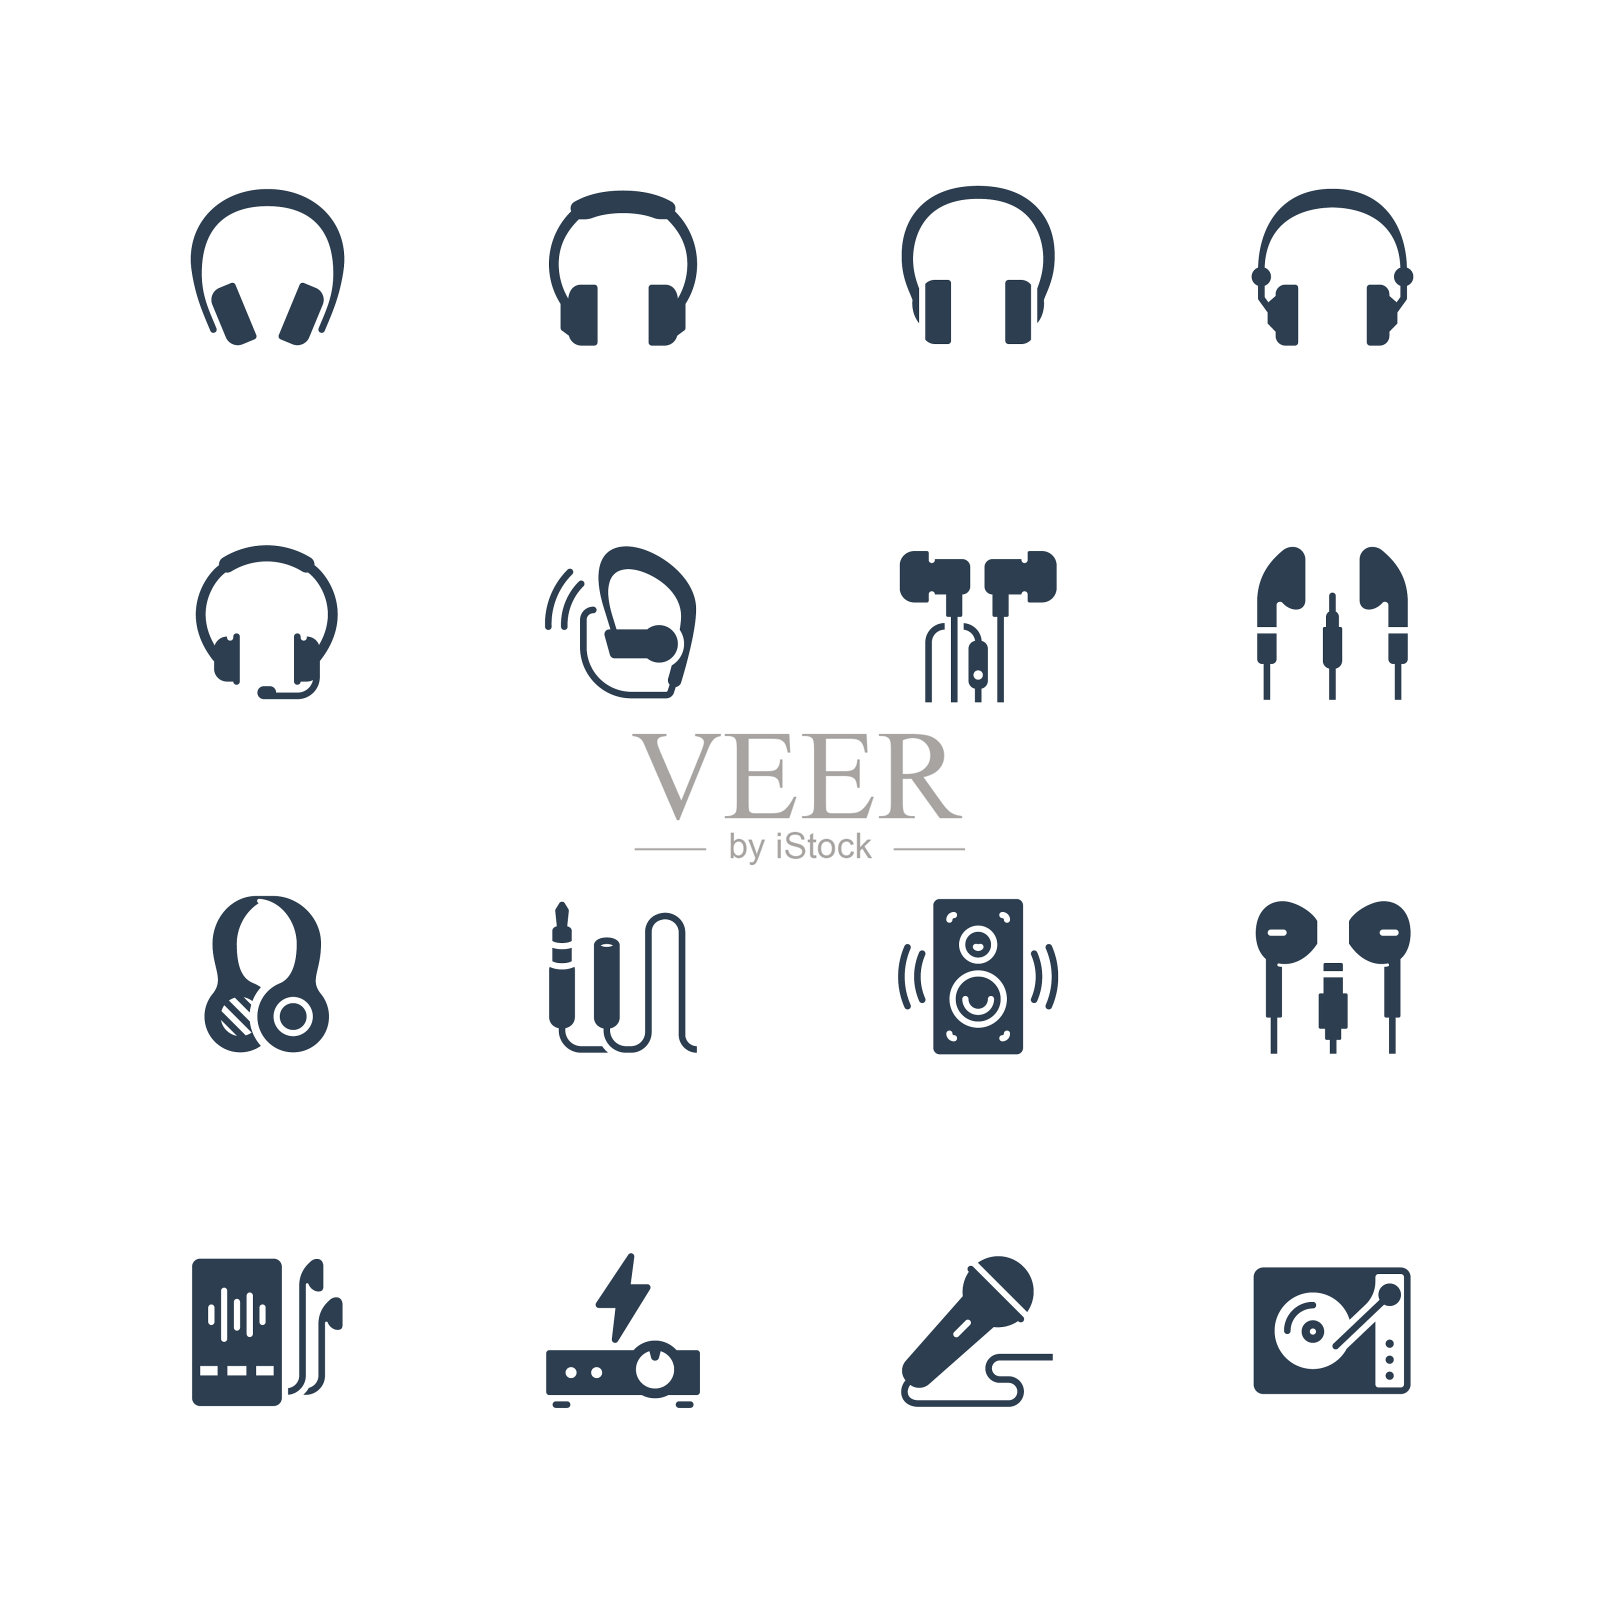 耳机和音频设备图标设置在字形风格图标素材